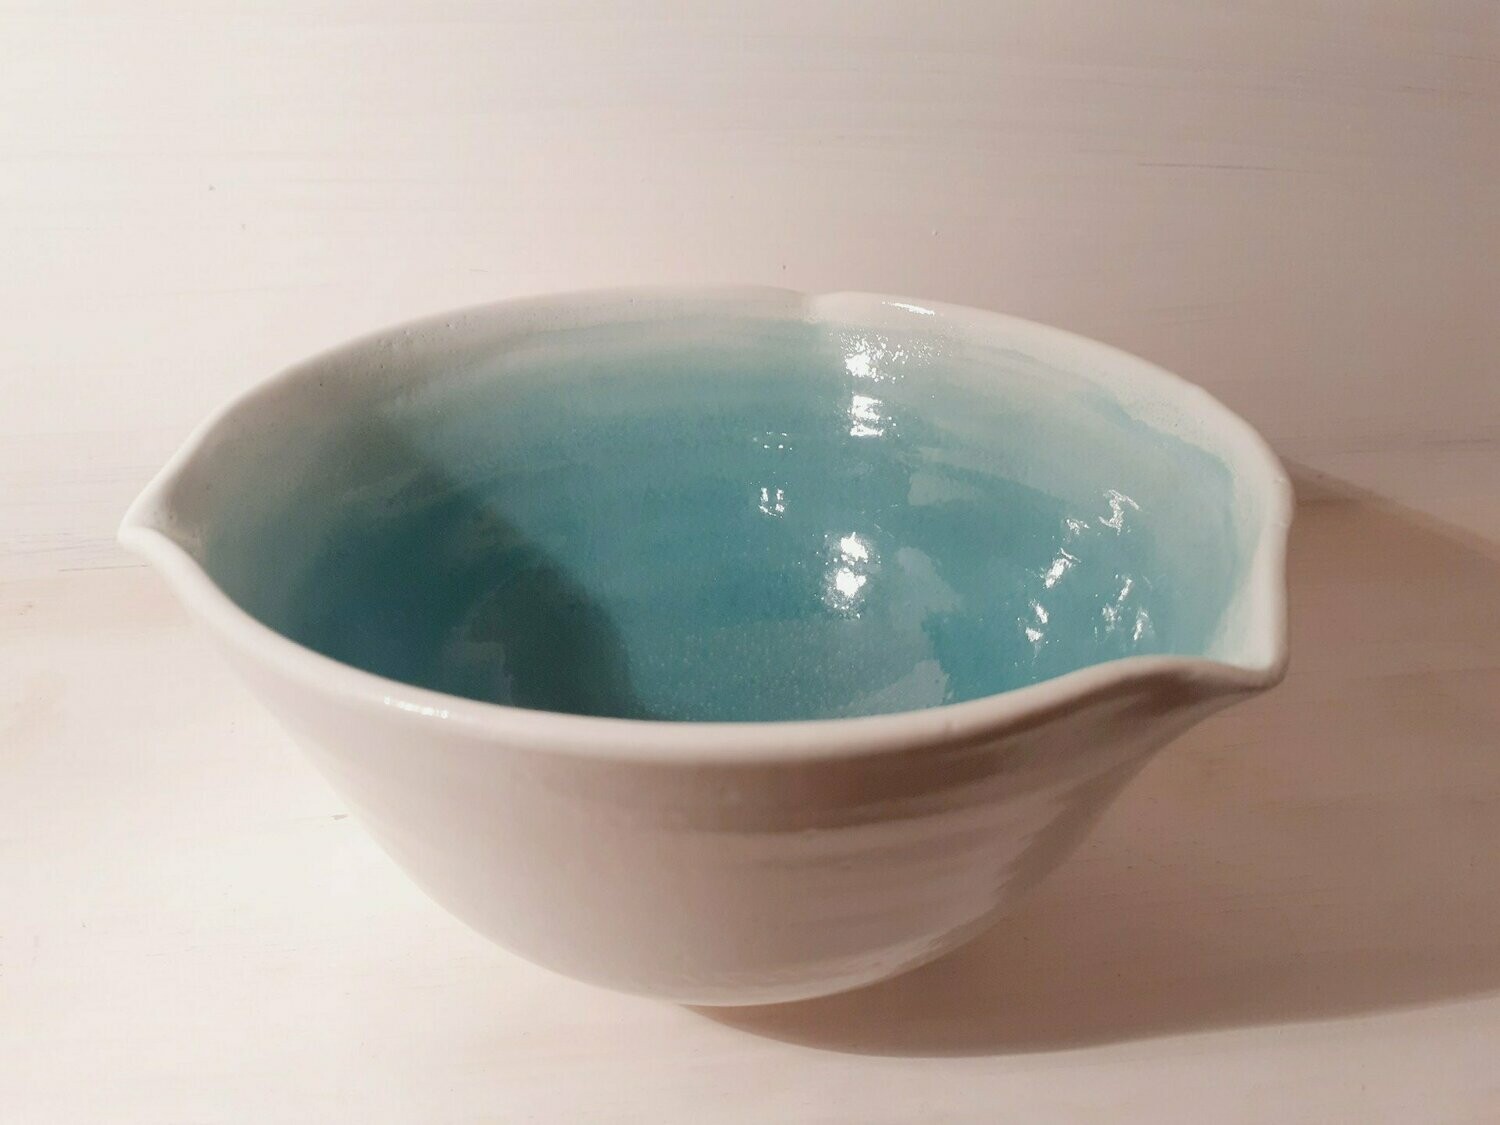 Stoneware bowl - white, turquoise - large